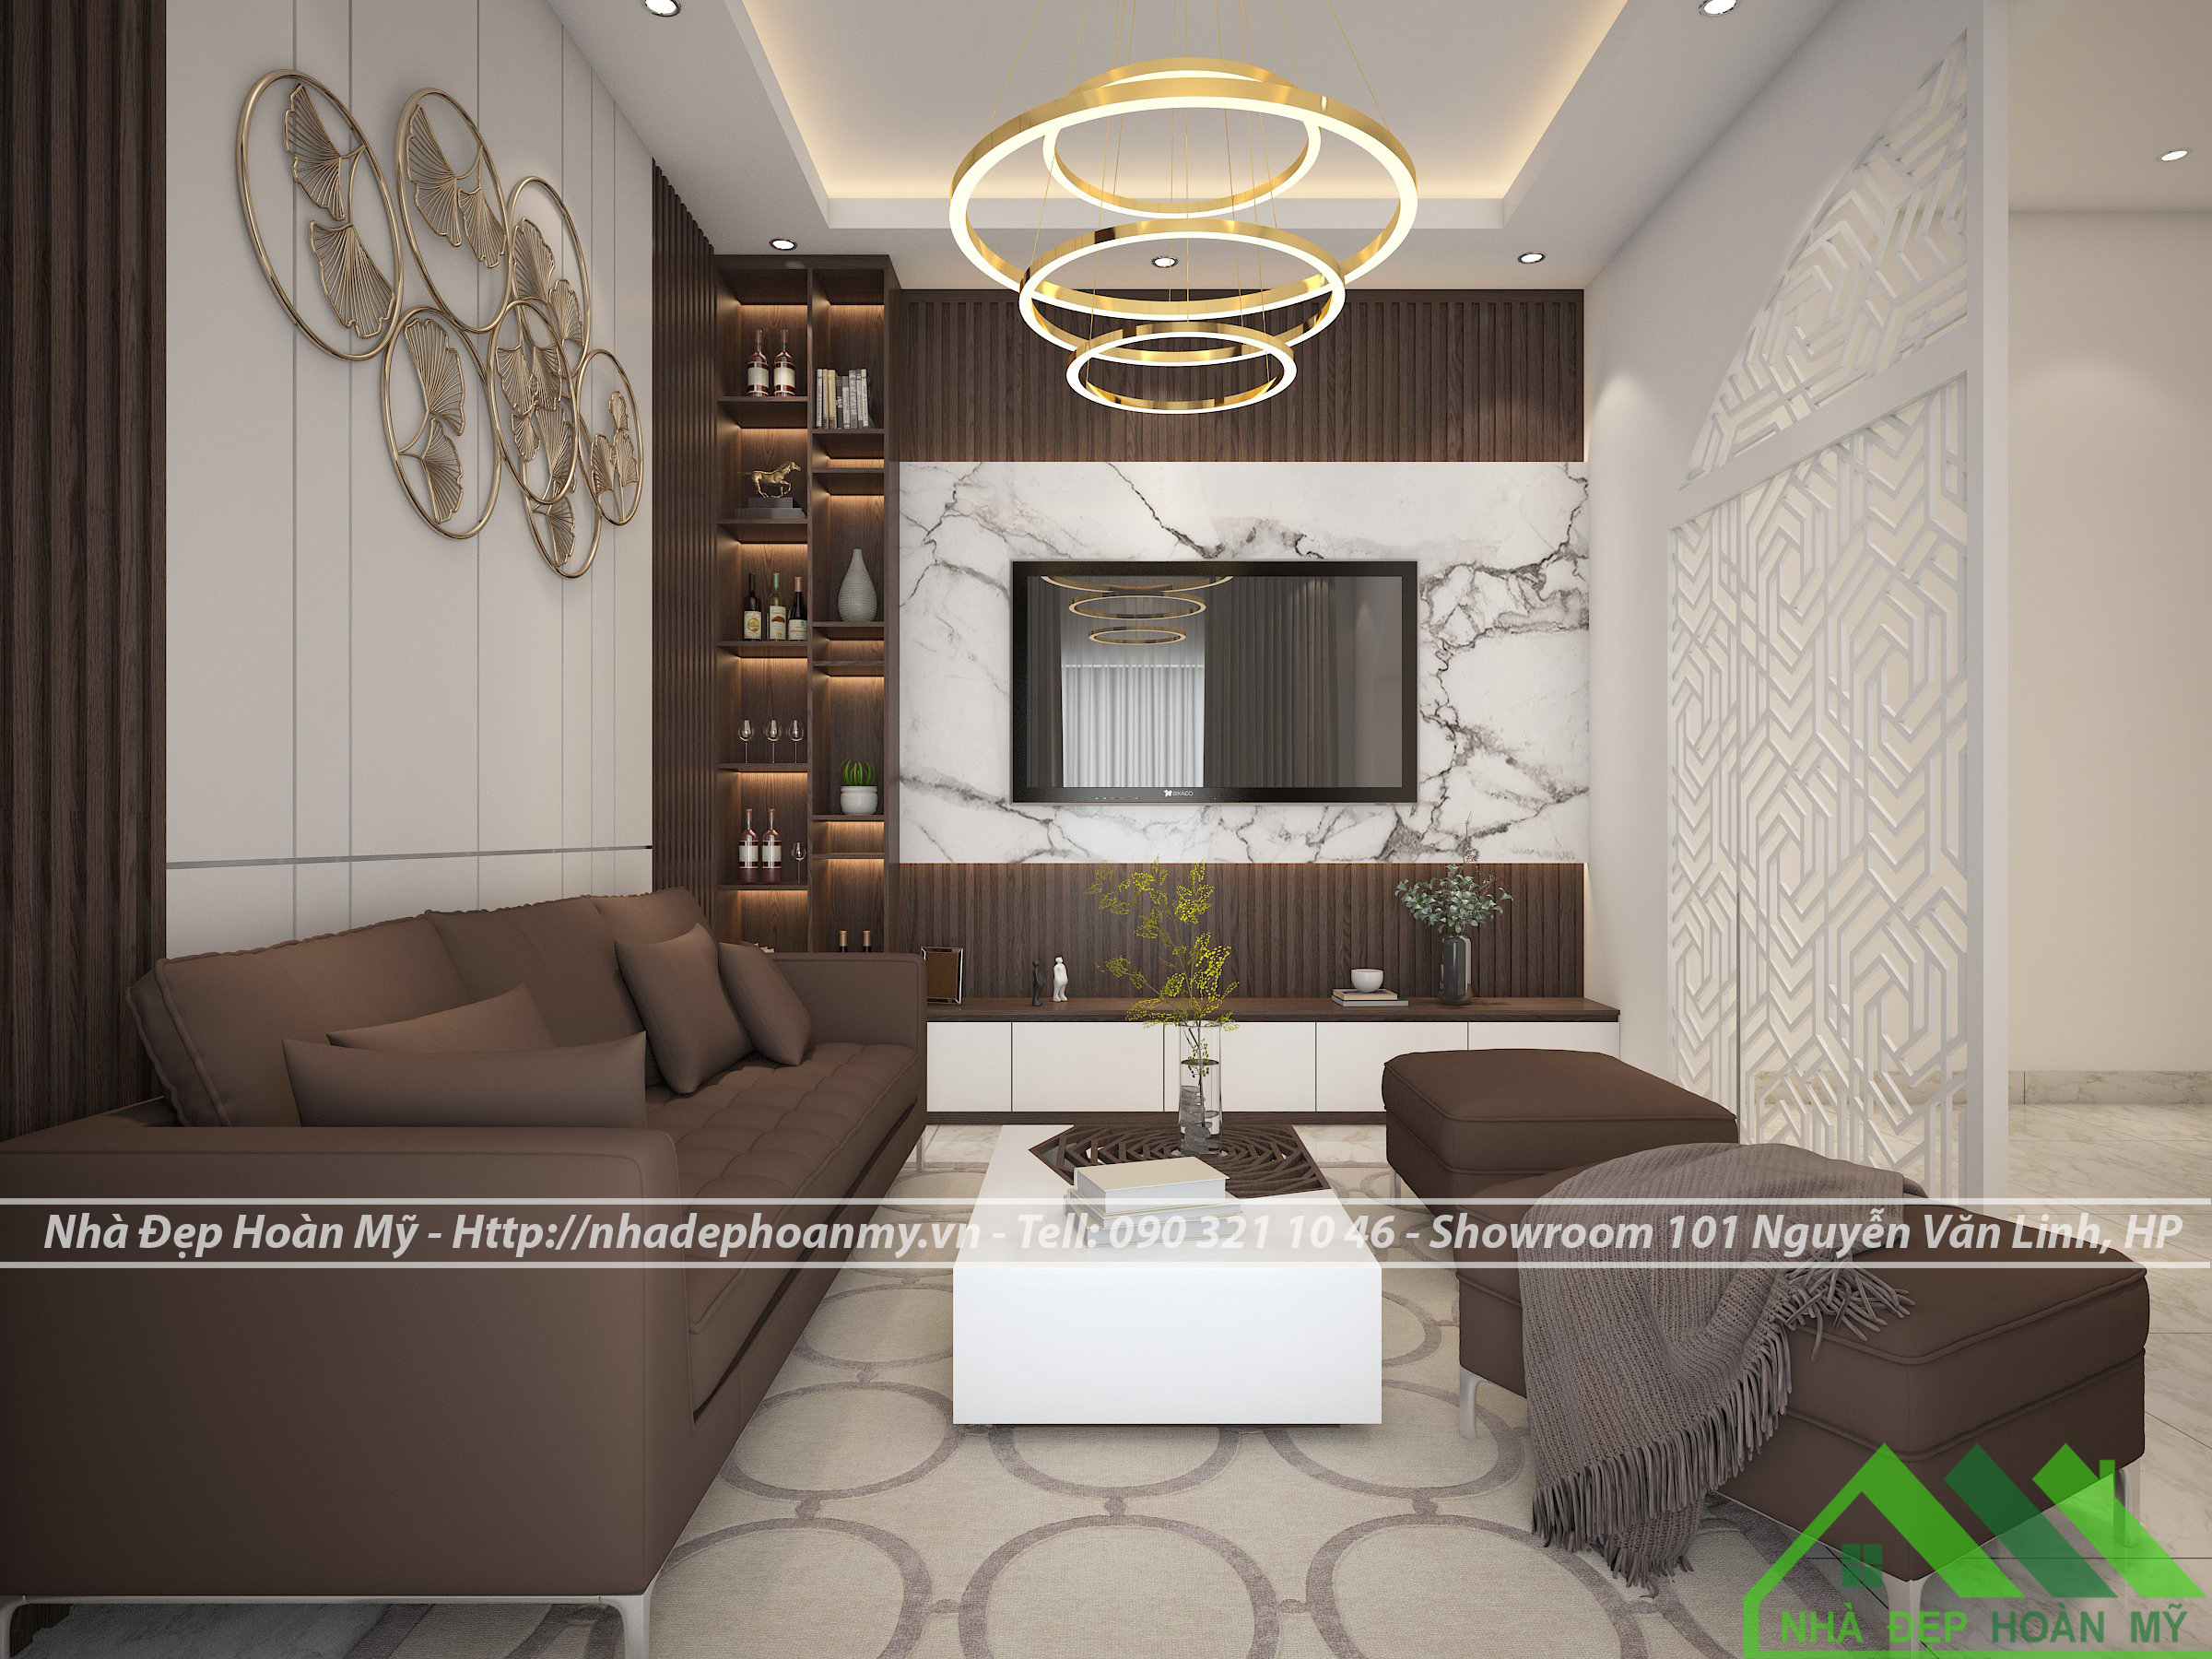 HOT] 7 Xu hướng thiết kế phòng khách đẹp, đơn giản mà hiện đại năm 2021 -  Nội thất Đặng Gia